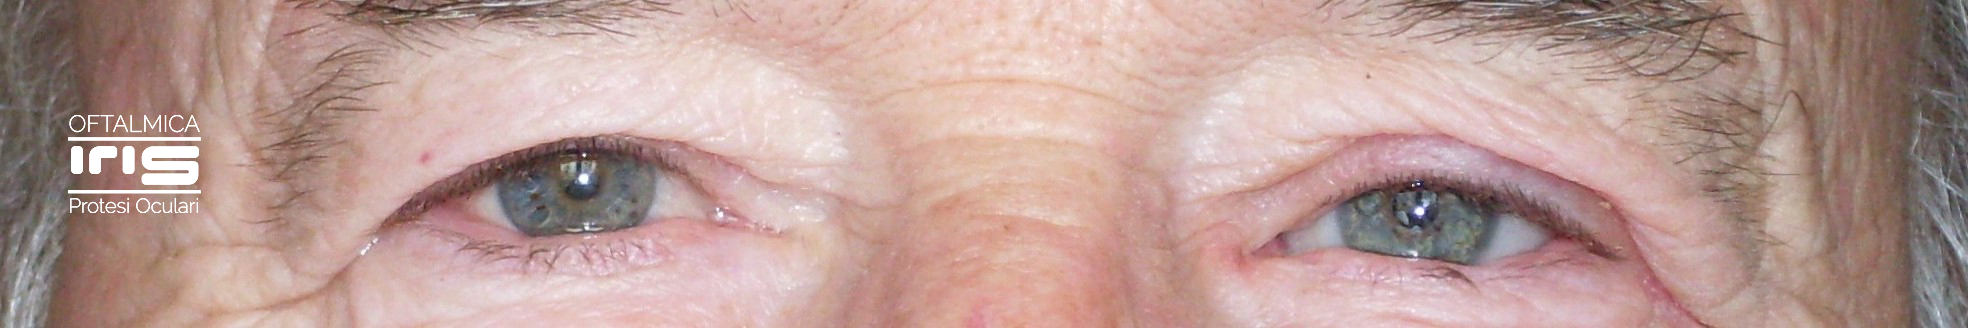 protesi oculare realizzato da oftalmica iris - genova - occhi azzurri